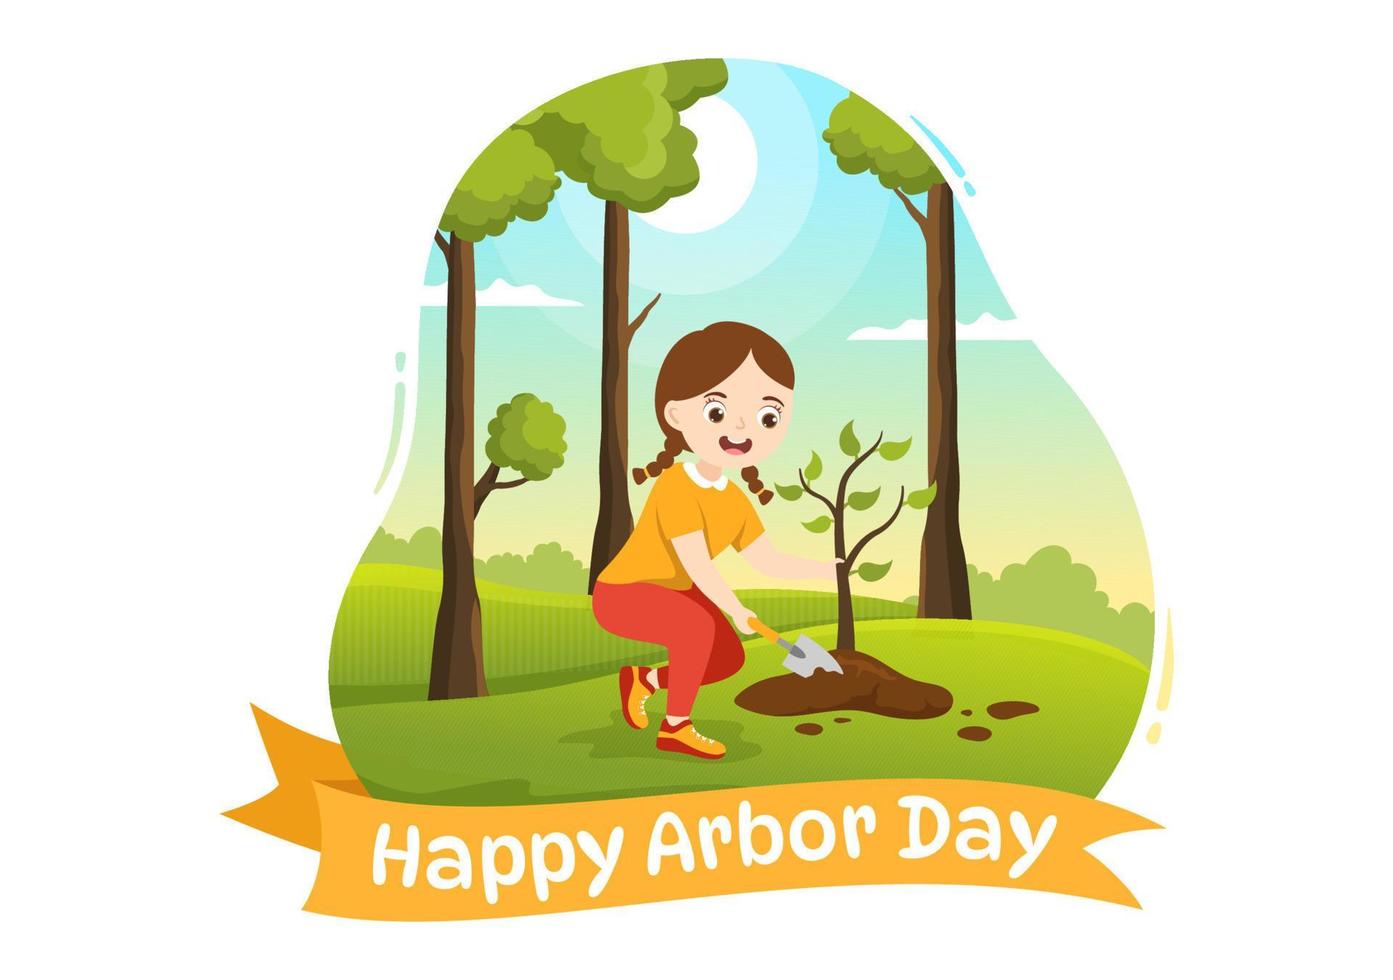 glücklich Laube Tag auf April 28 Illustration mit Kinder Pflanzen ein Baum und Natur Umgebung im eben Karikatur Hand gezeichnet zum Landung Seite Vorlagen vektor